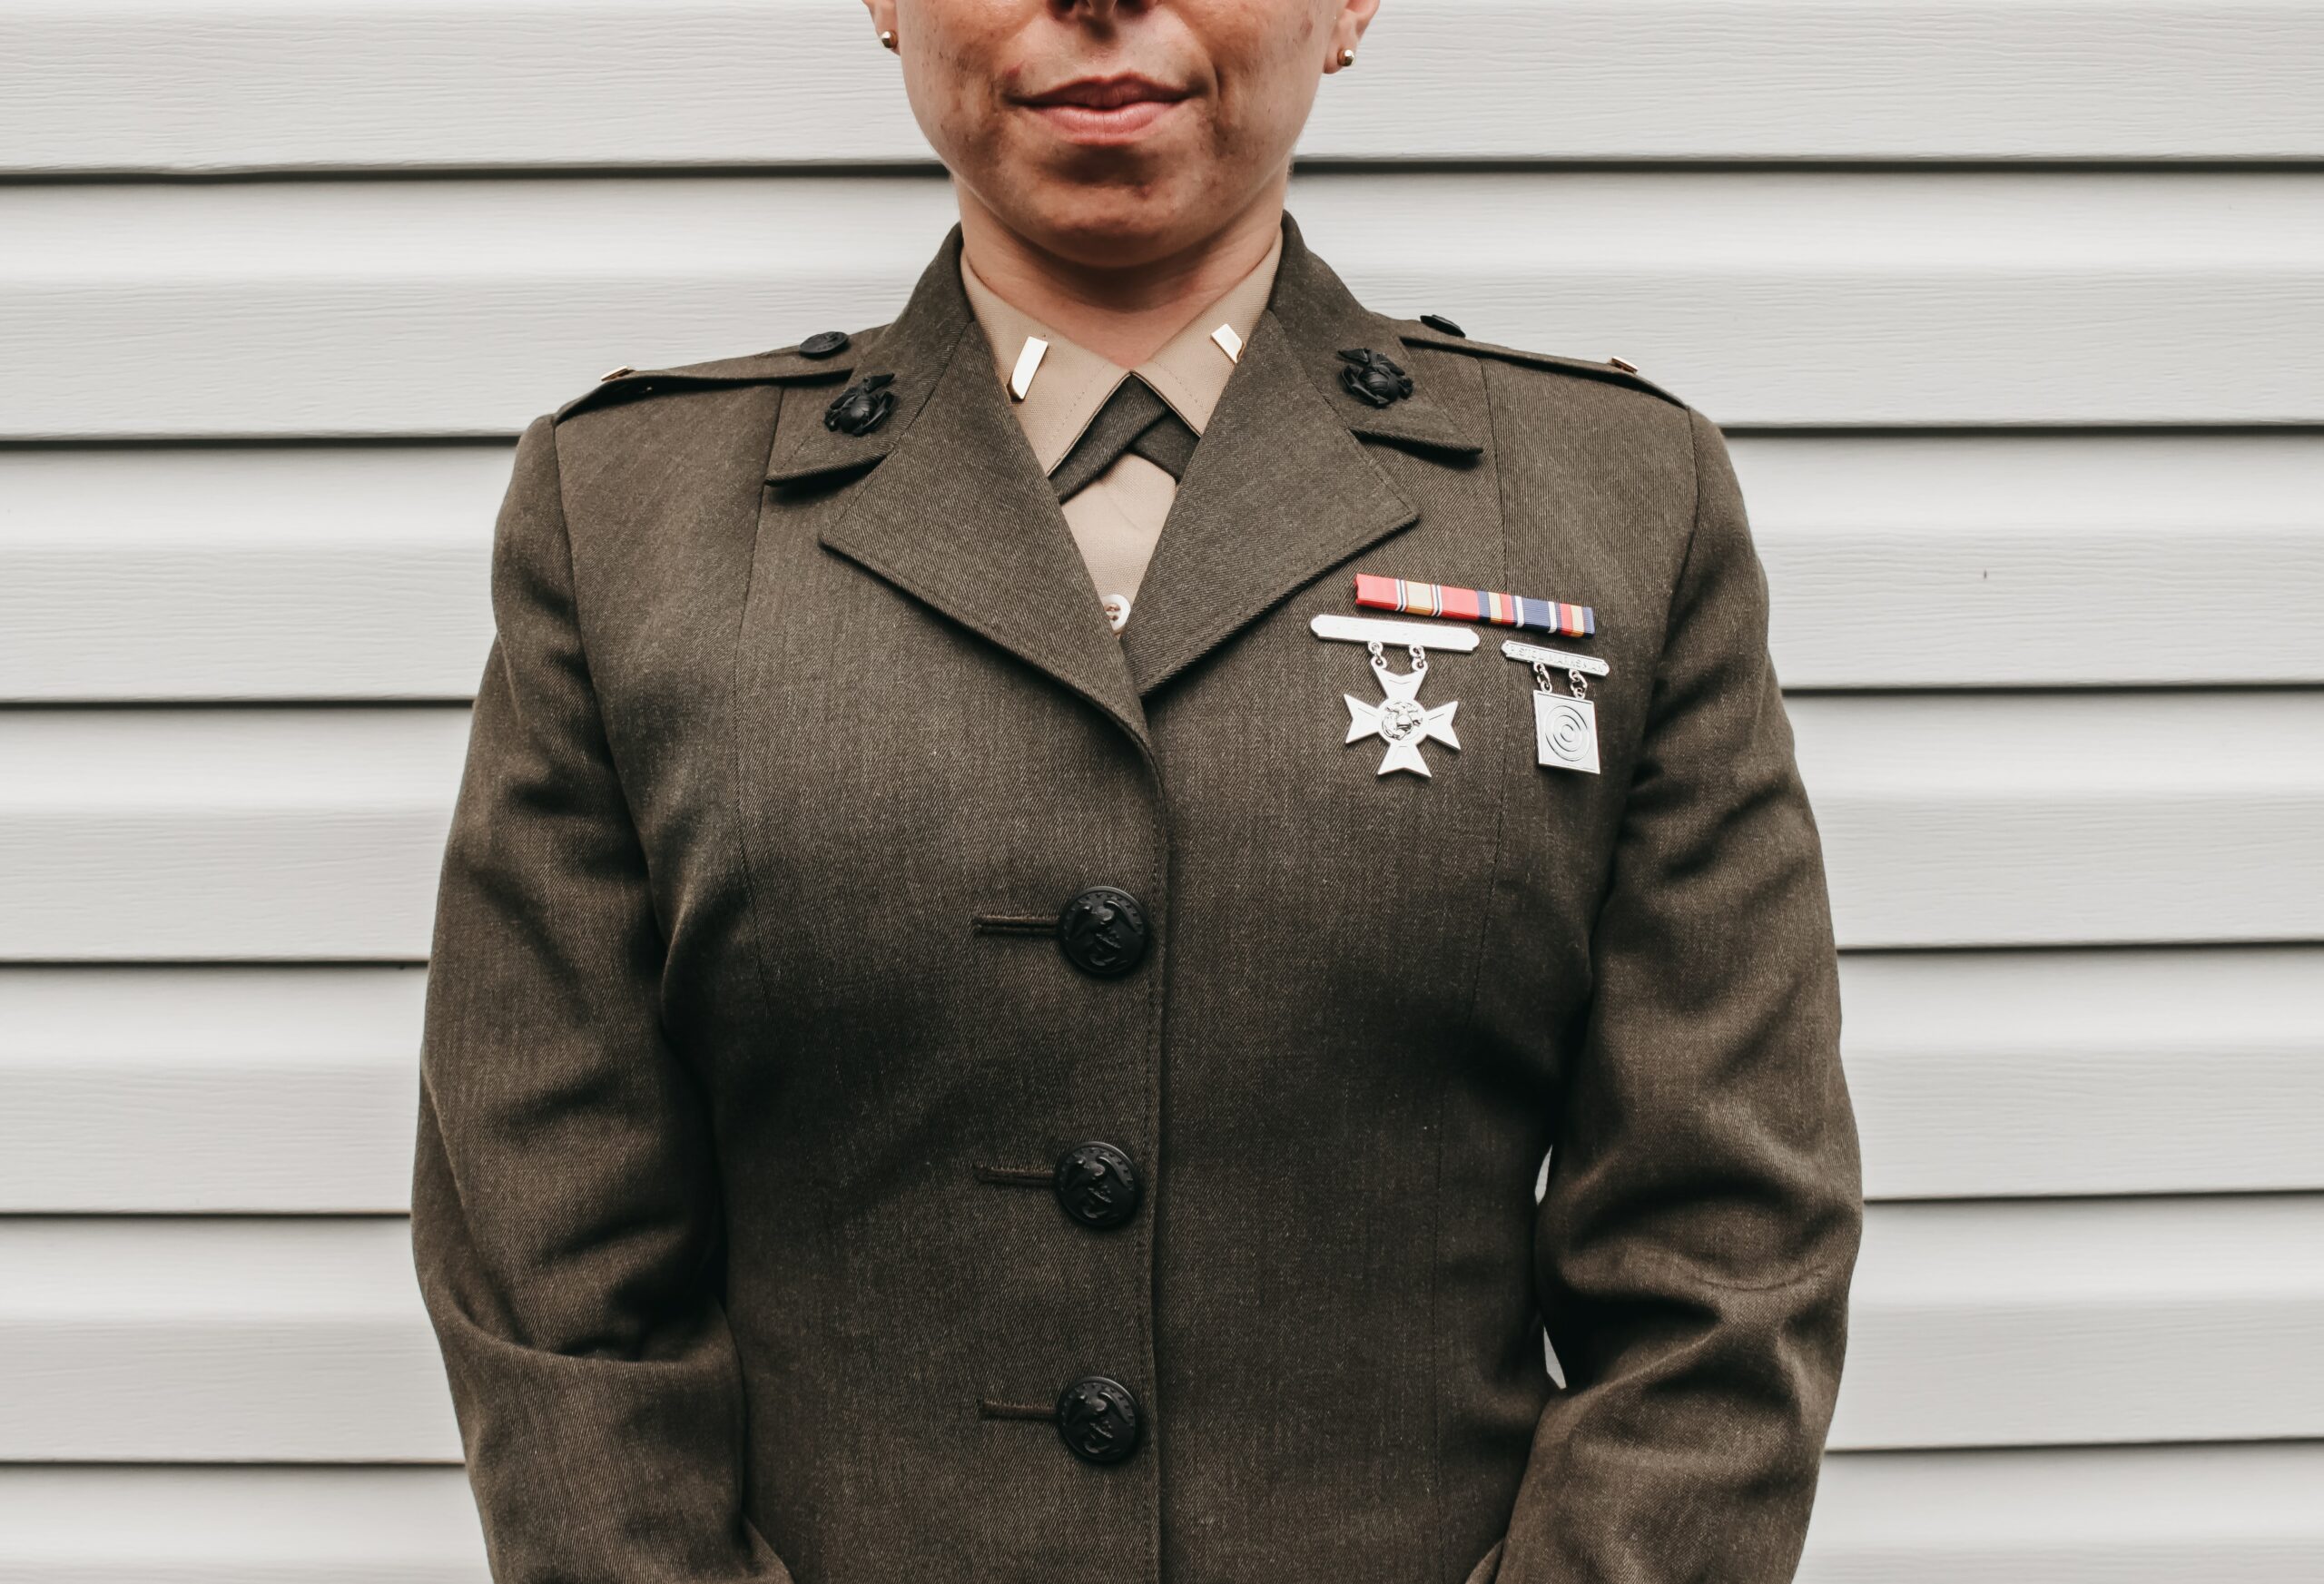 Female veteran